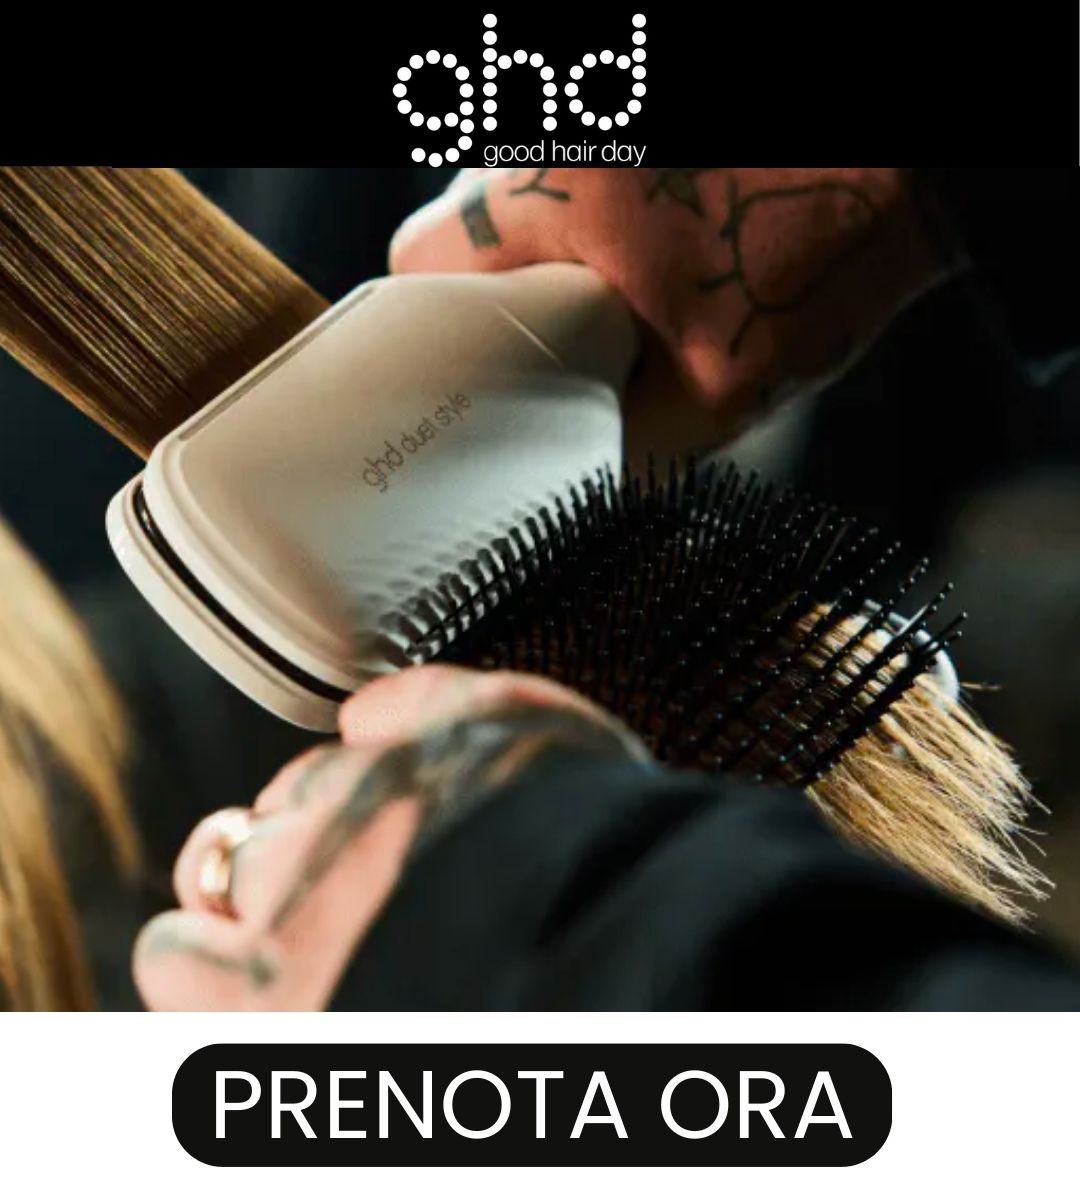 ghd free your style prenota la tua piega gratuita